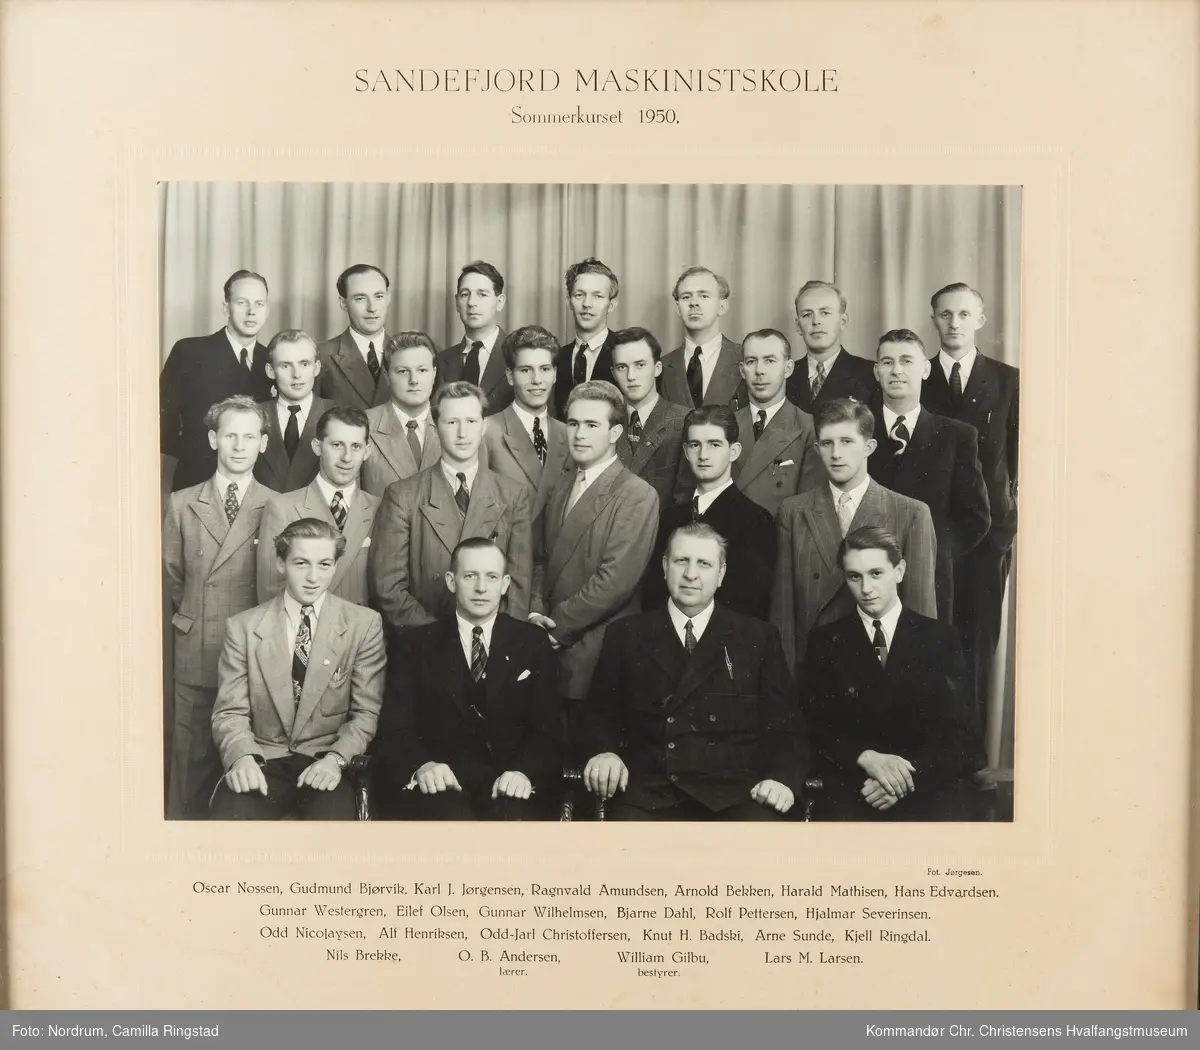 Sandefjord Maskinistskole. Elever sommerkurset 1950.
Navn under bildet